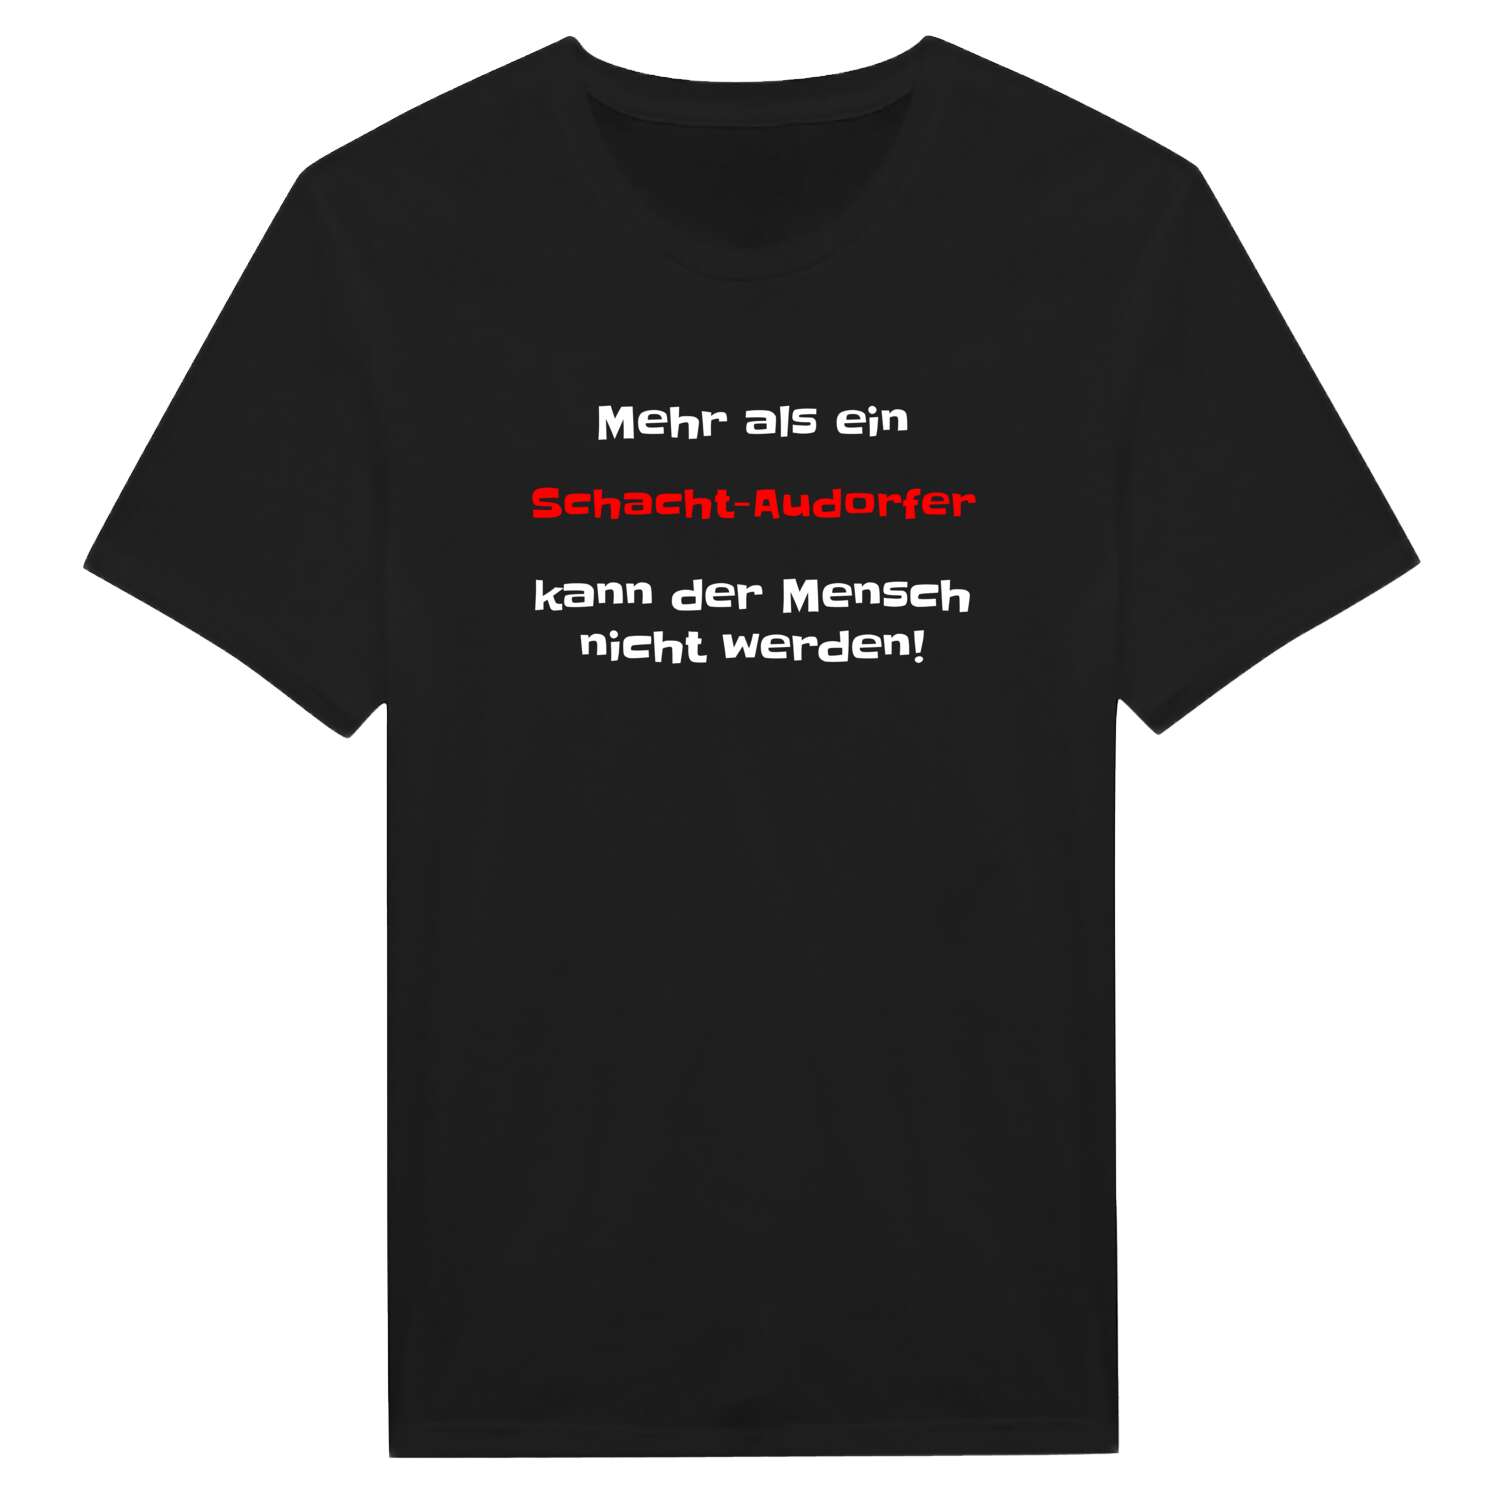 Schacht-Audorf T-Shirt »Mehr als ein«